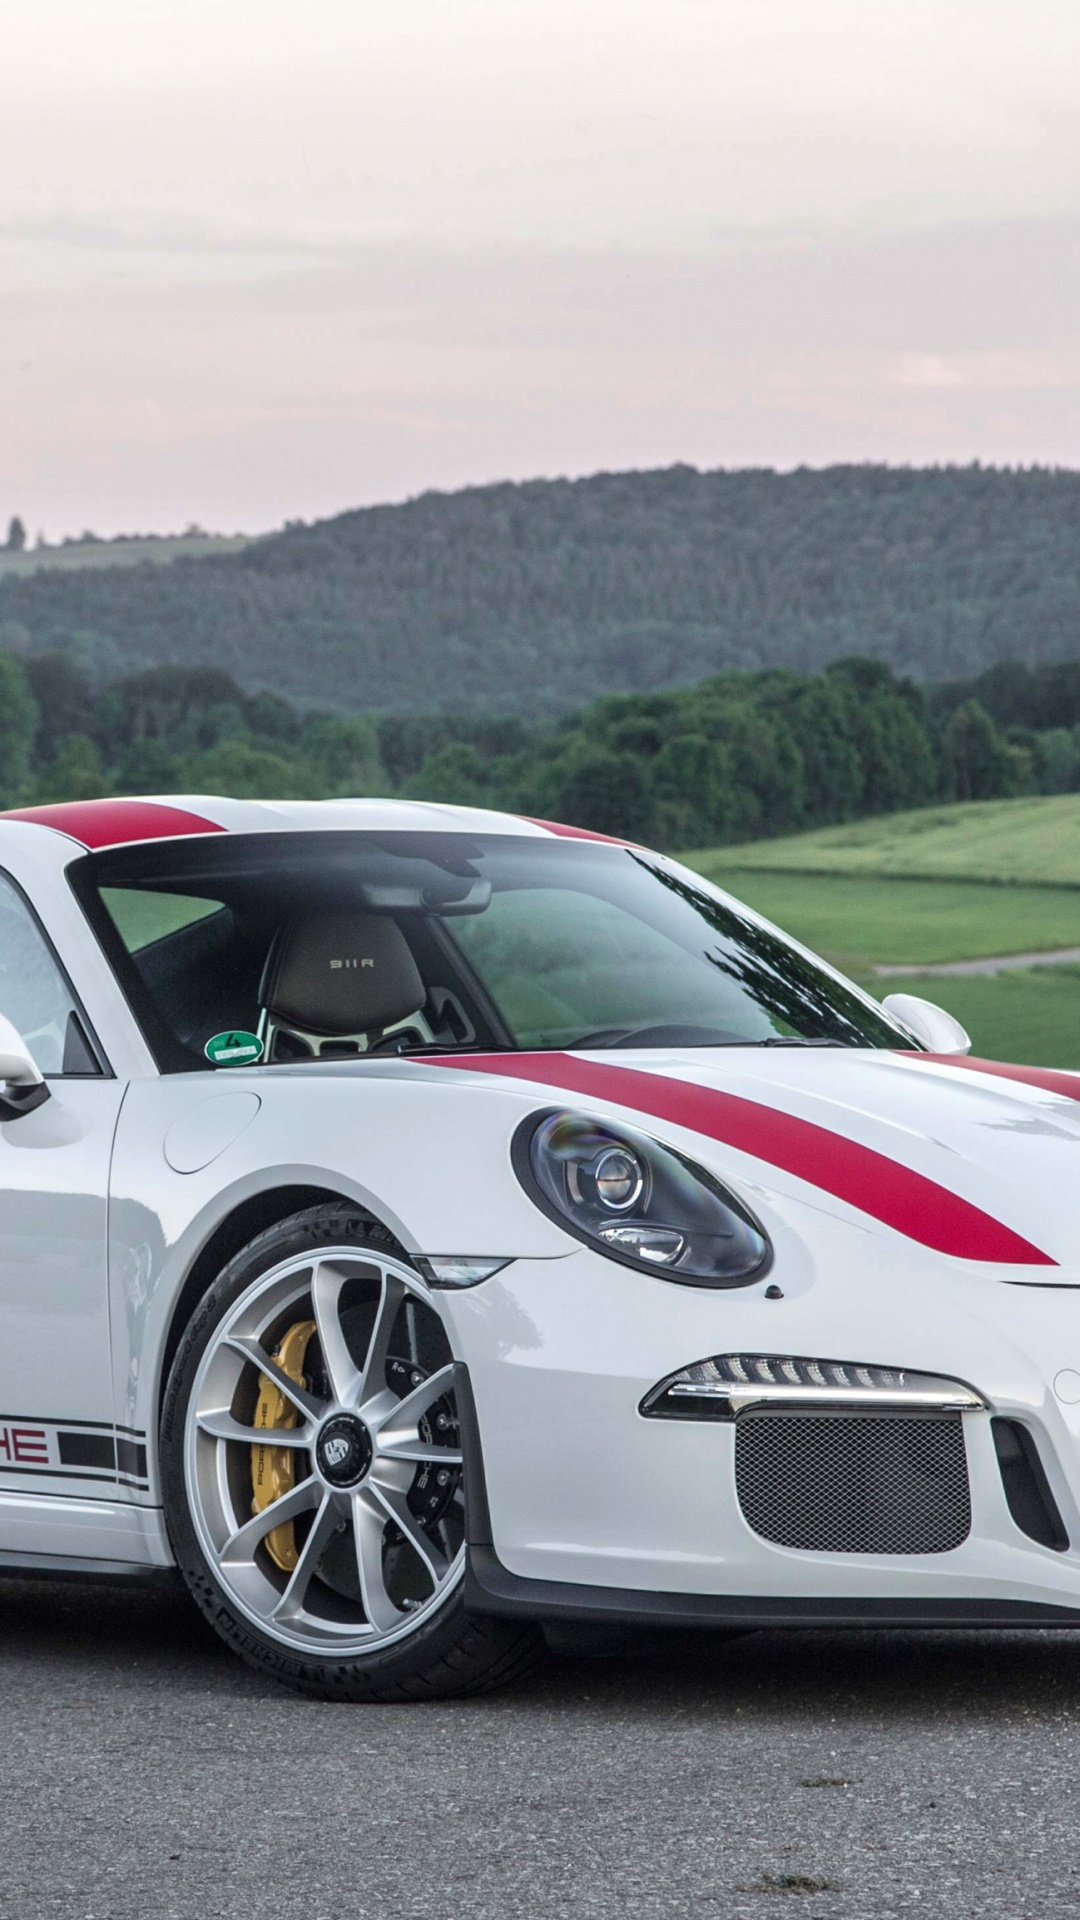 Weißer Porsche 911 Tagsüber Unterwegs. Wallpaper in 1080x1920 Resolution